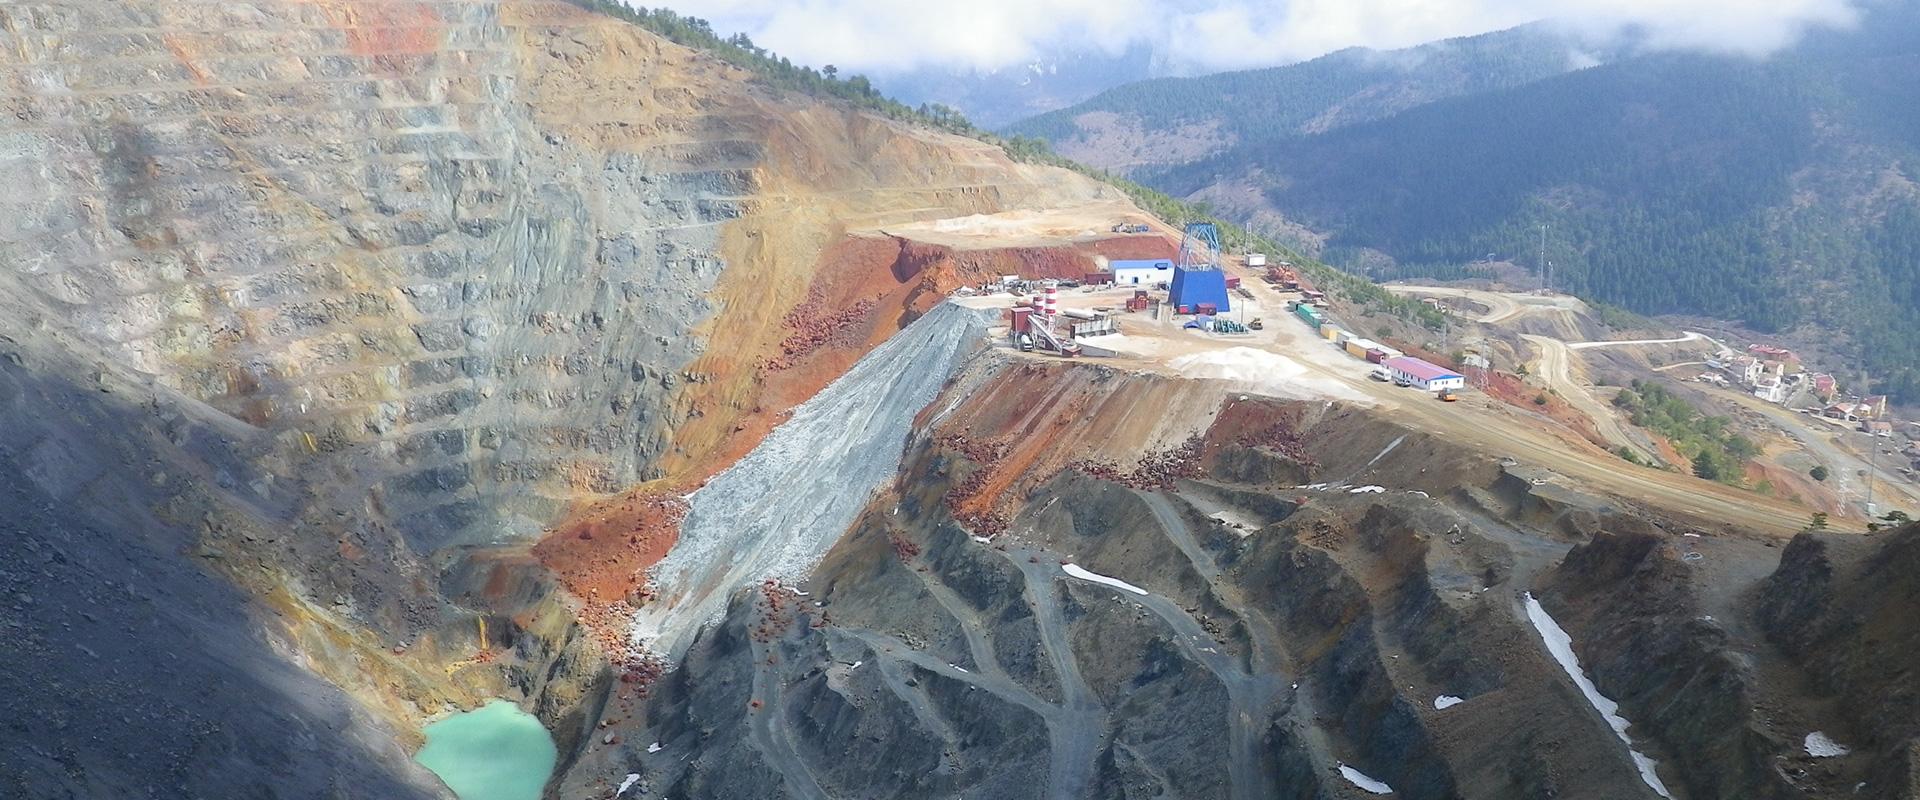 Vue de la mine de cuivre, Turquie